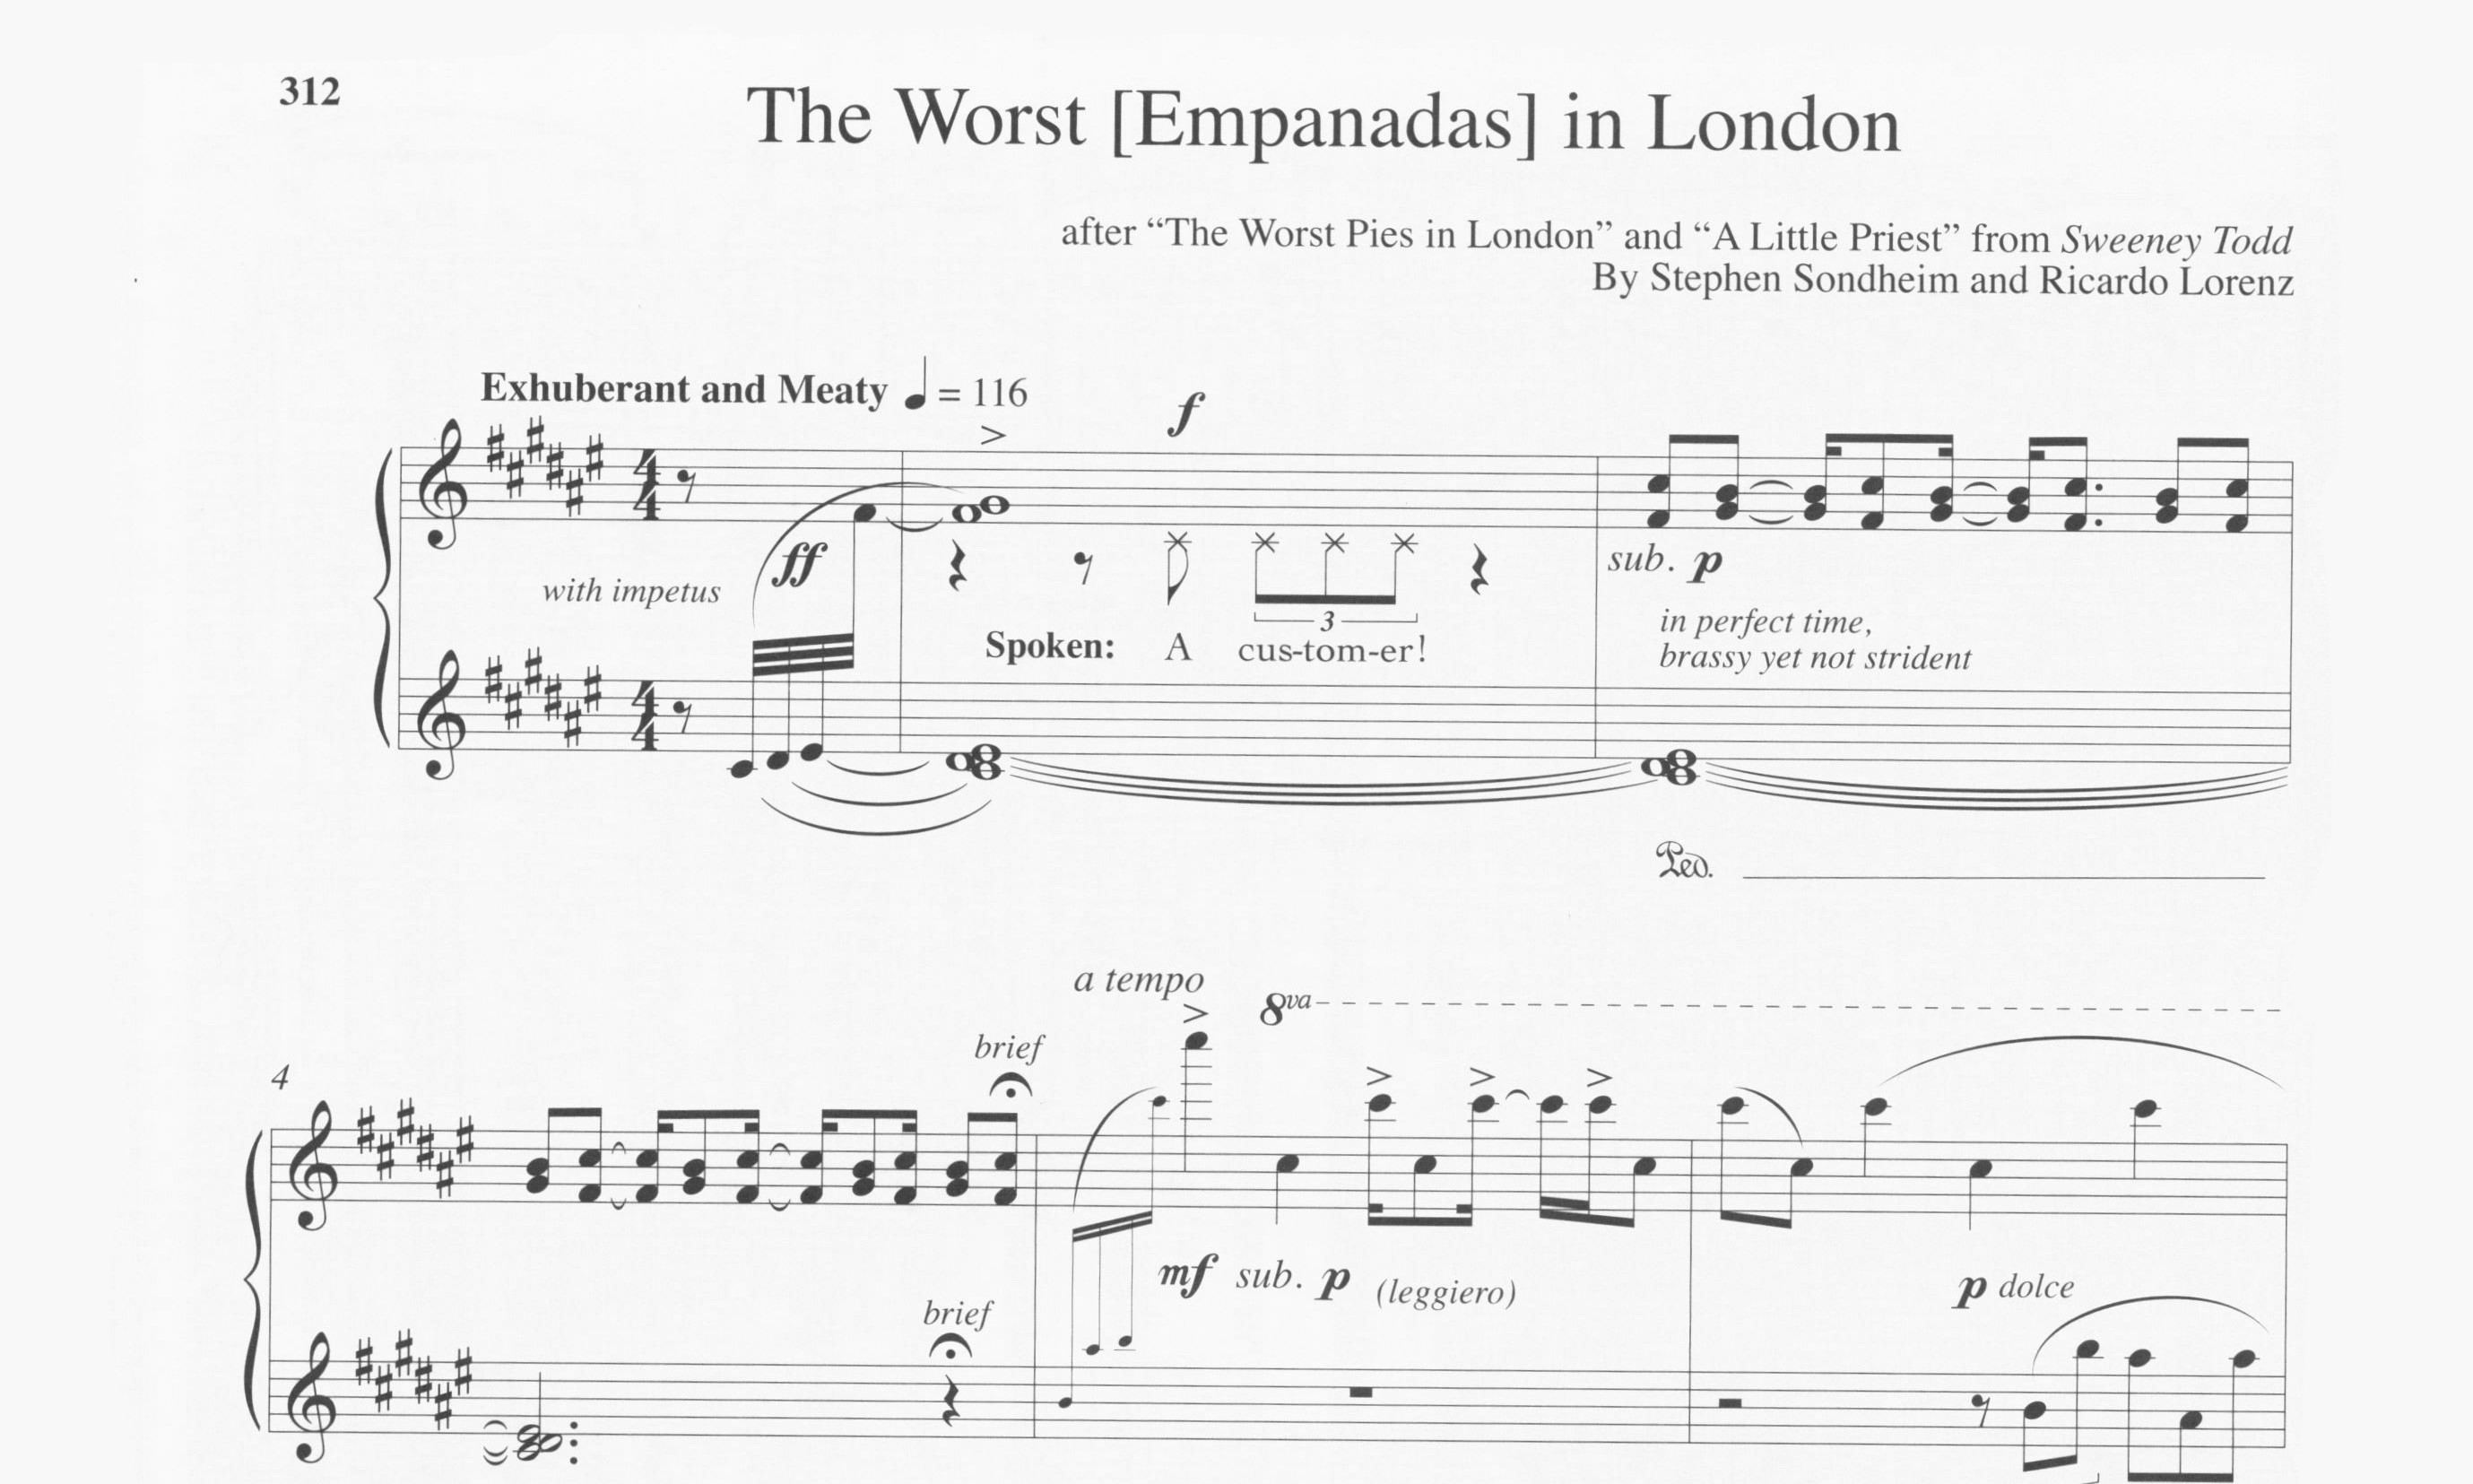 Lorenz, Ricardo - The Worst Empanadas in London